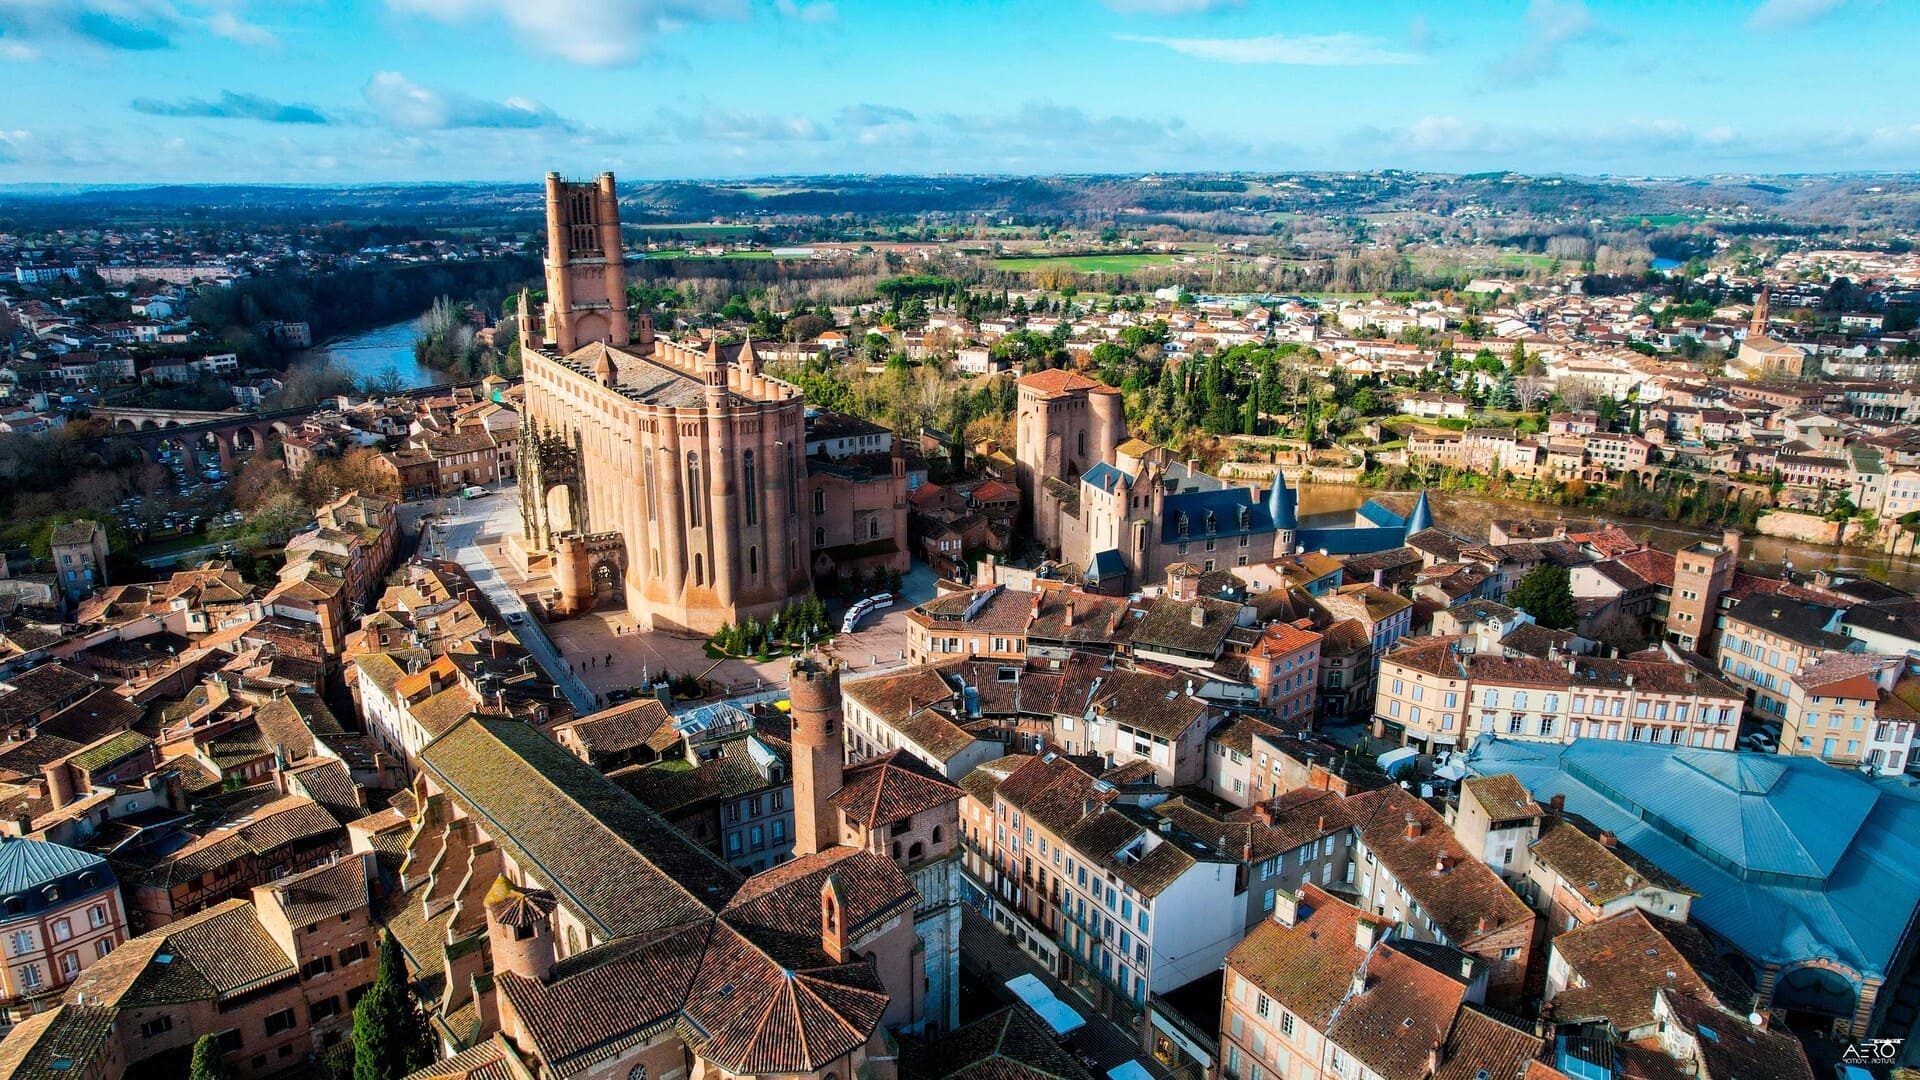 Sobrevola Albi i el perímetre catalogat com a Patrimoni de la Humanitat: per sobre dels terrats la catedral, la col·legiata de Saint-Salvi, el palau de Berbie, el mercat cobert.